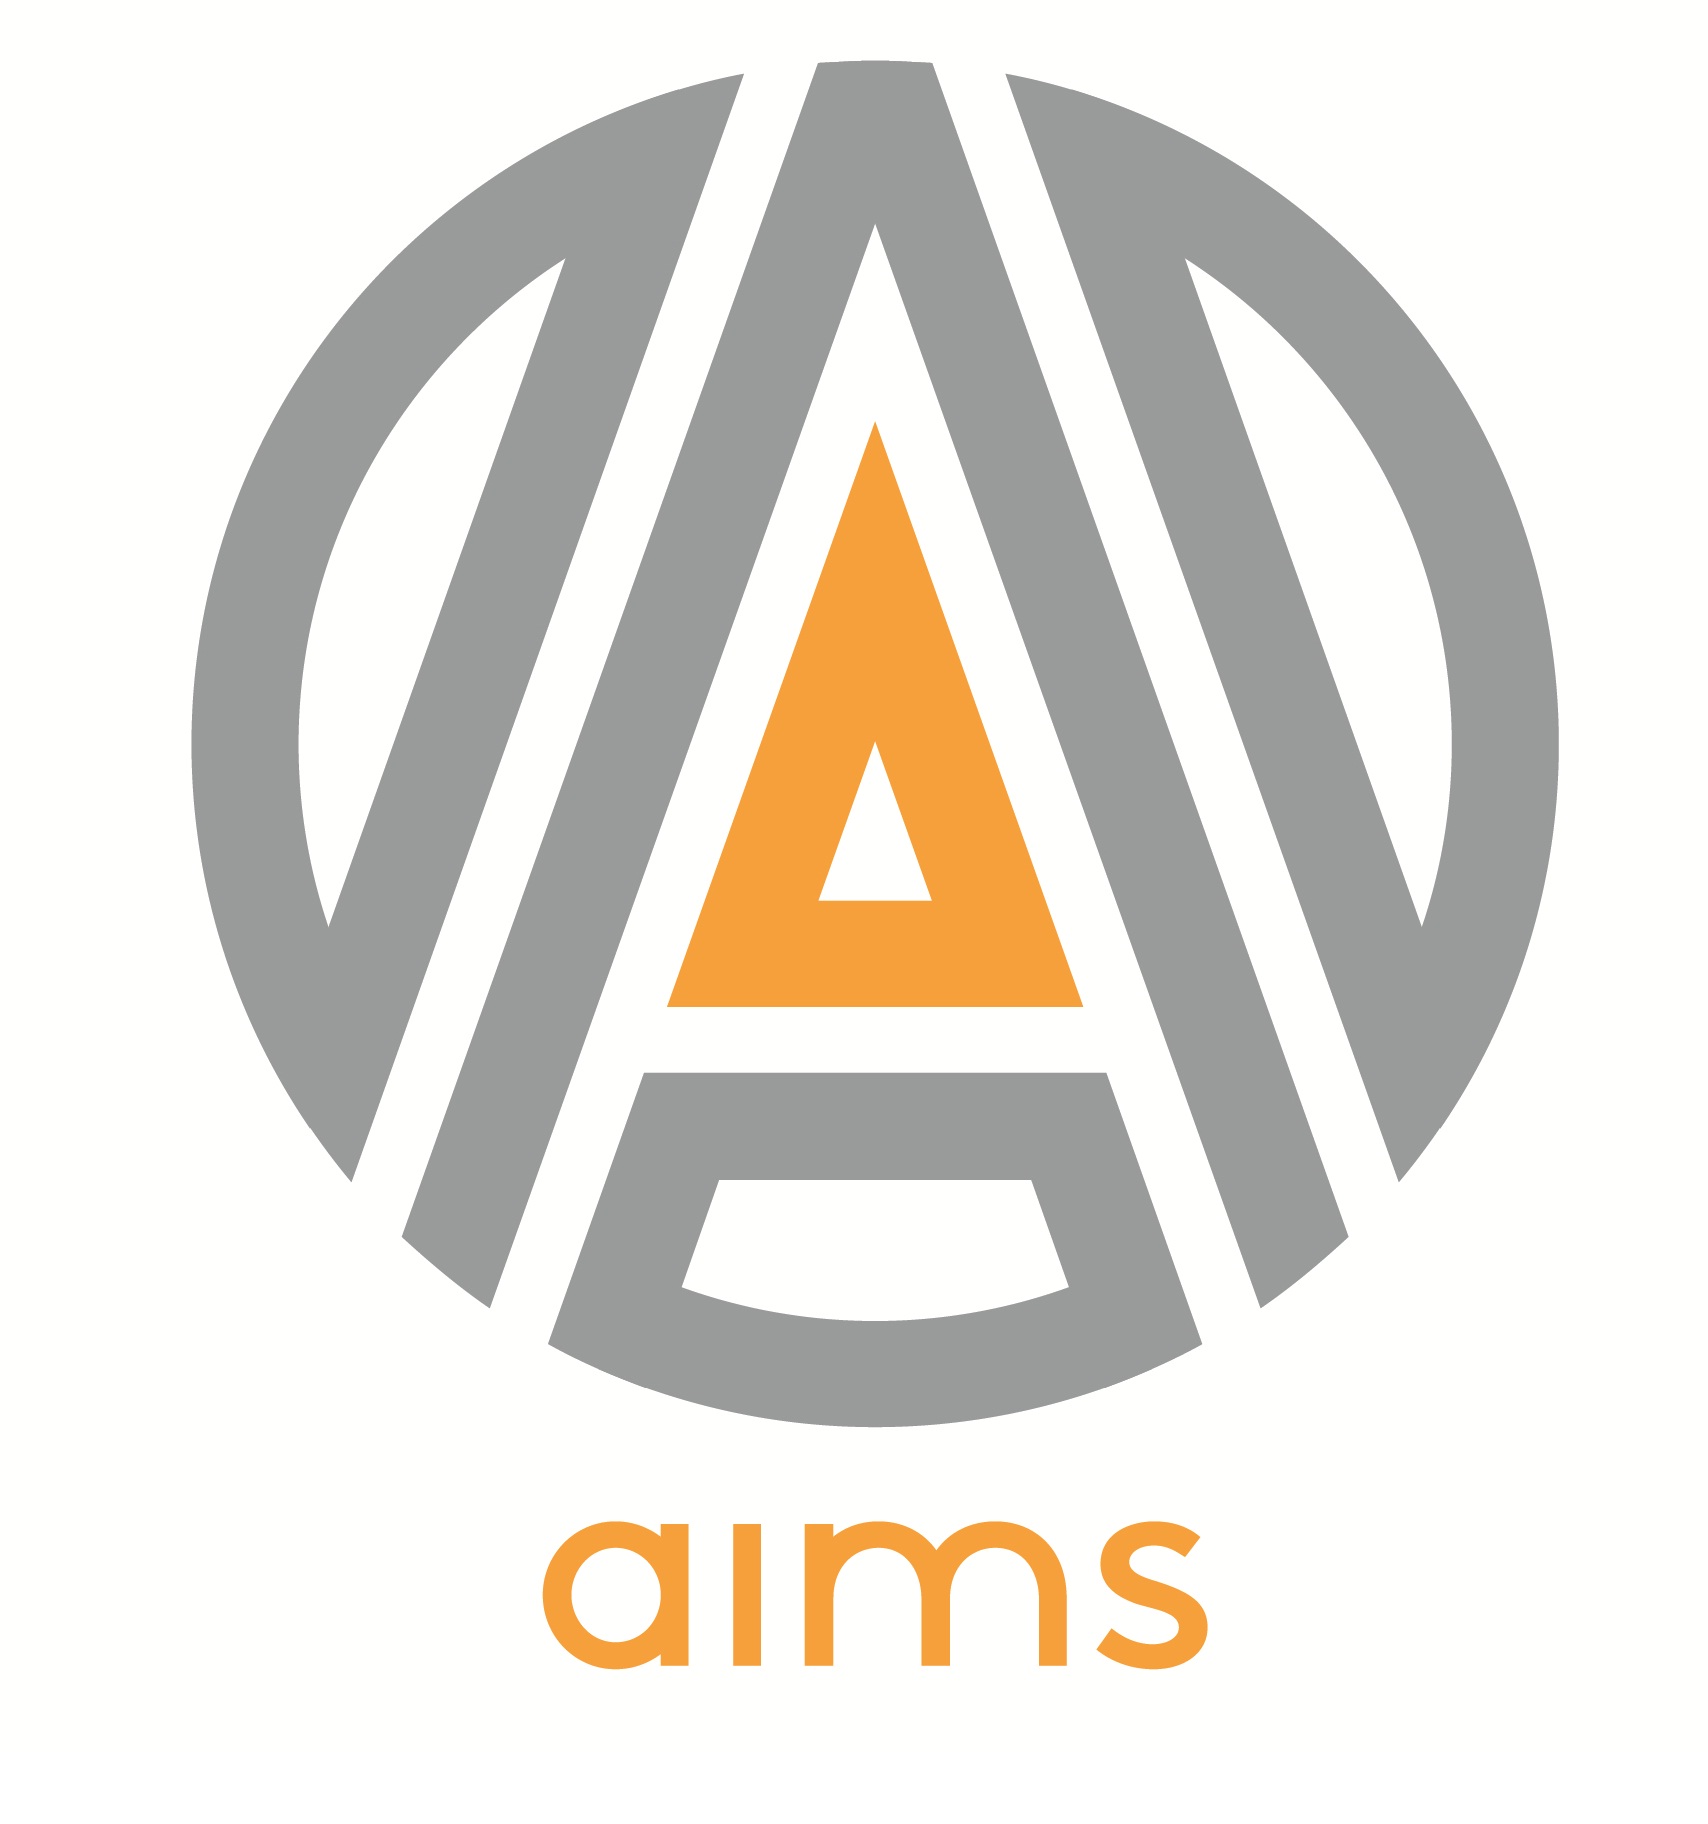 AIMS Industries Pvt. Ltd